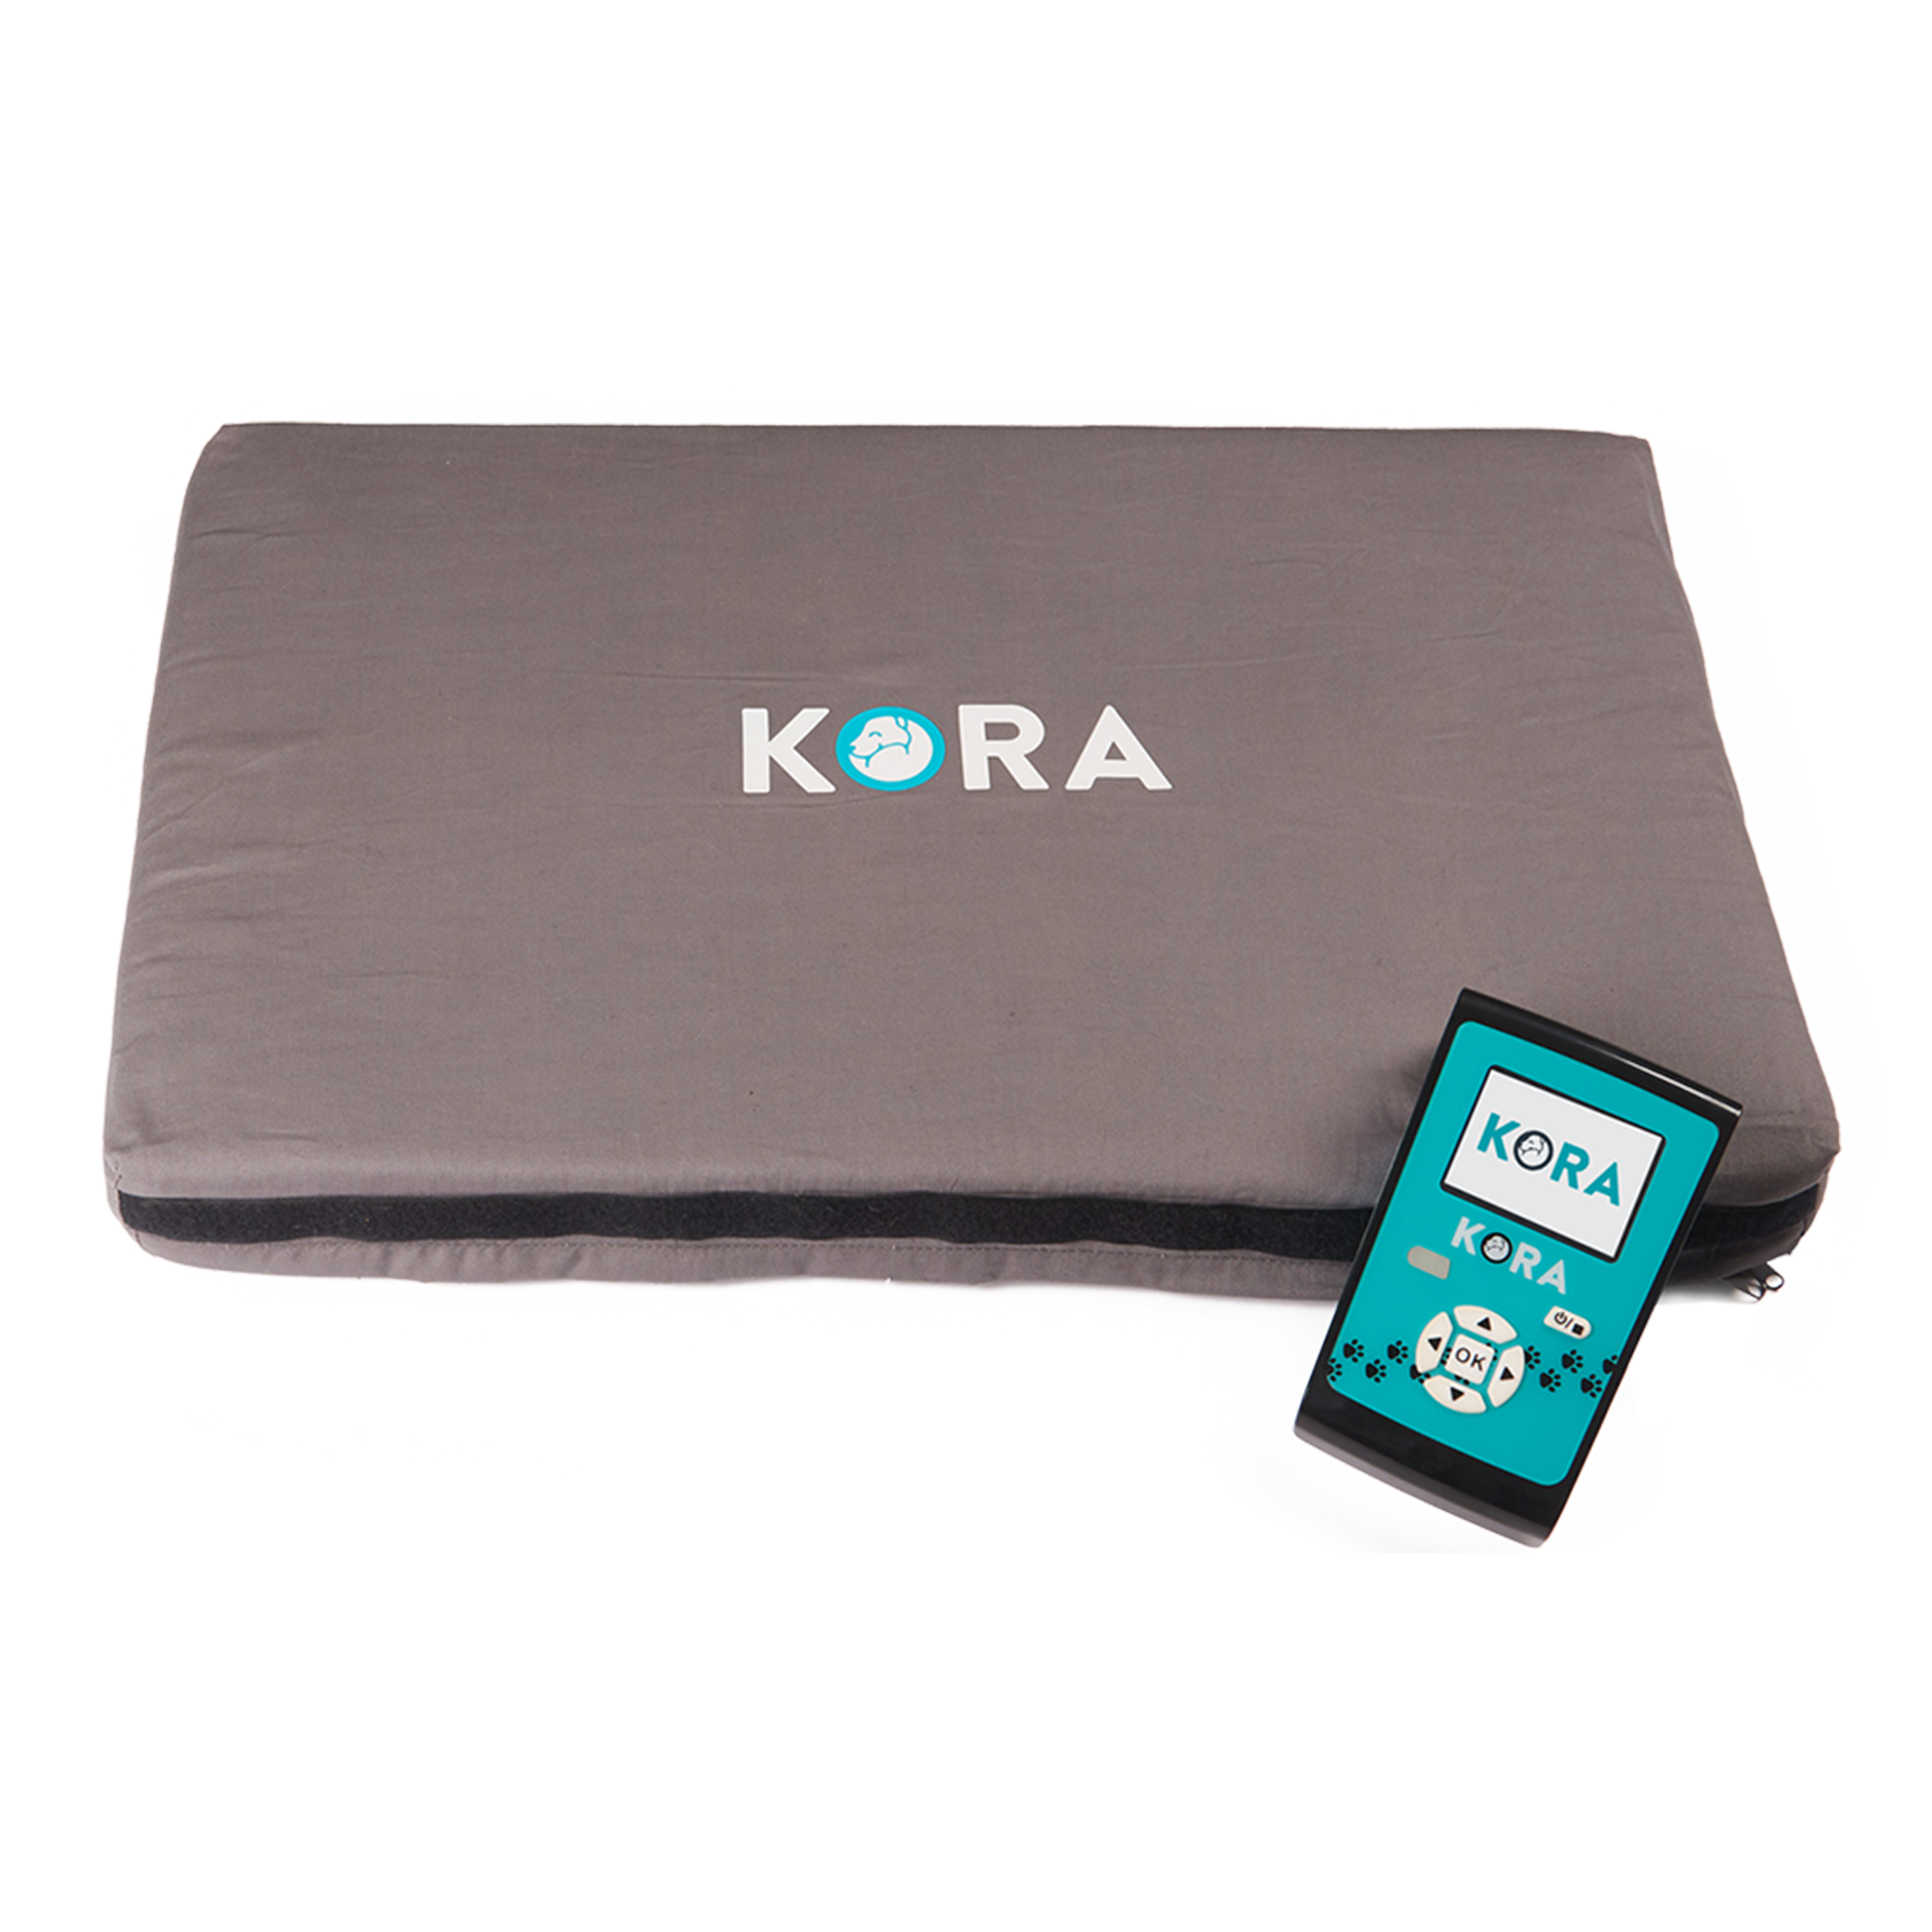 Lindern Sie Schmerzen und Entzündungen Ihres Haustieres bequem von zu Hause aus mit KORA, dem neuesten Modell der Magnetfeldtherapie.